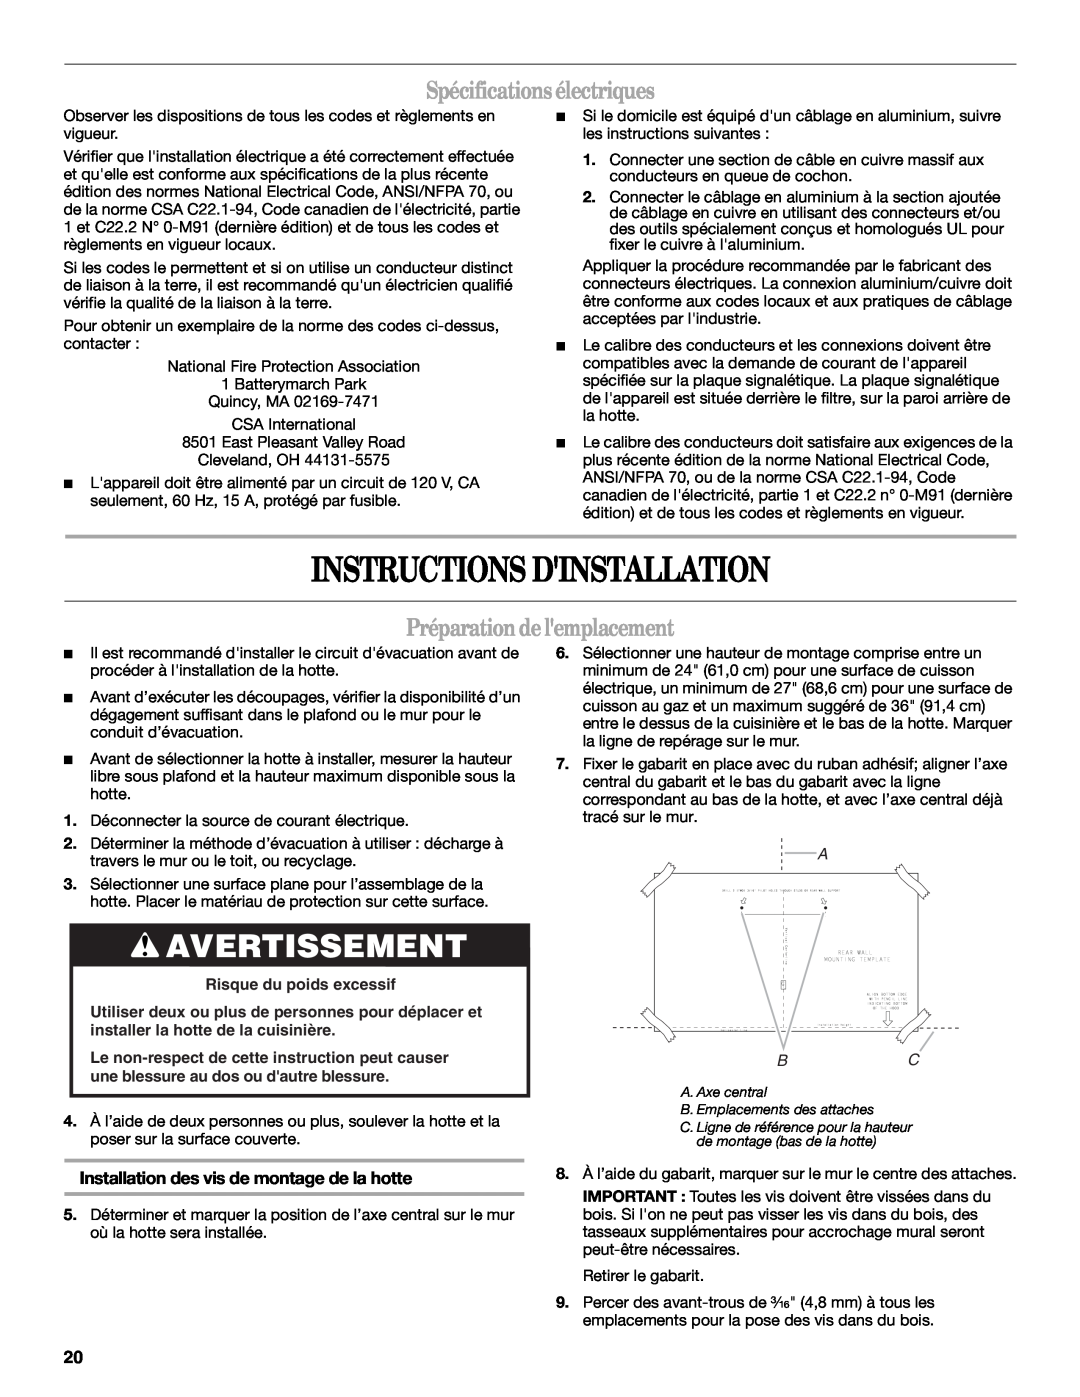 Whirlpool LI3YMC/W Instructions Dinstallation, Avertissement, Spécifications électriques, Préparation de lemplacement 